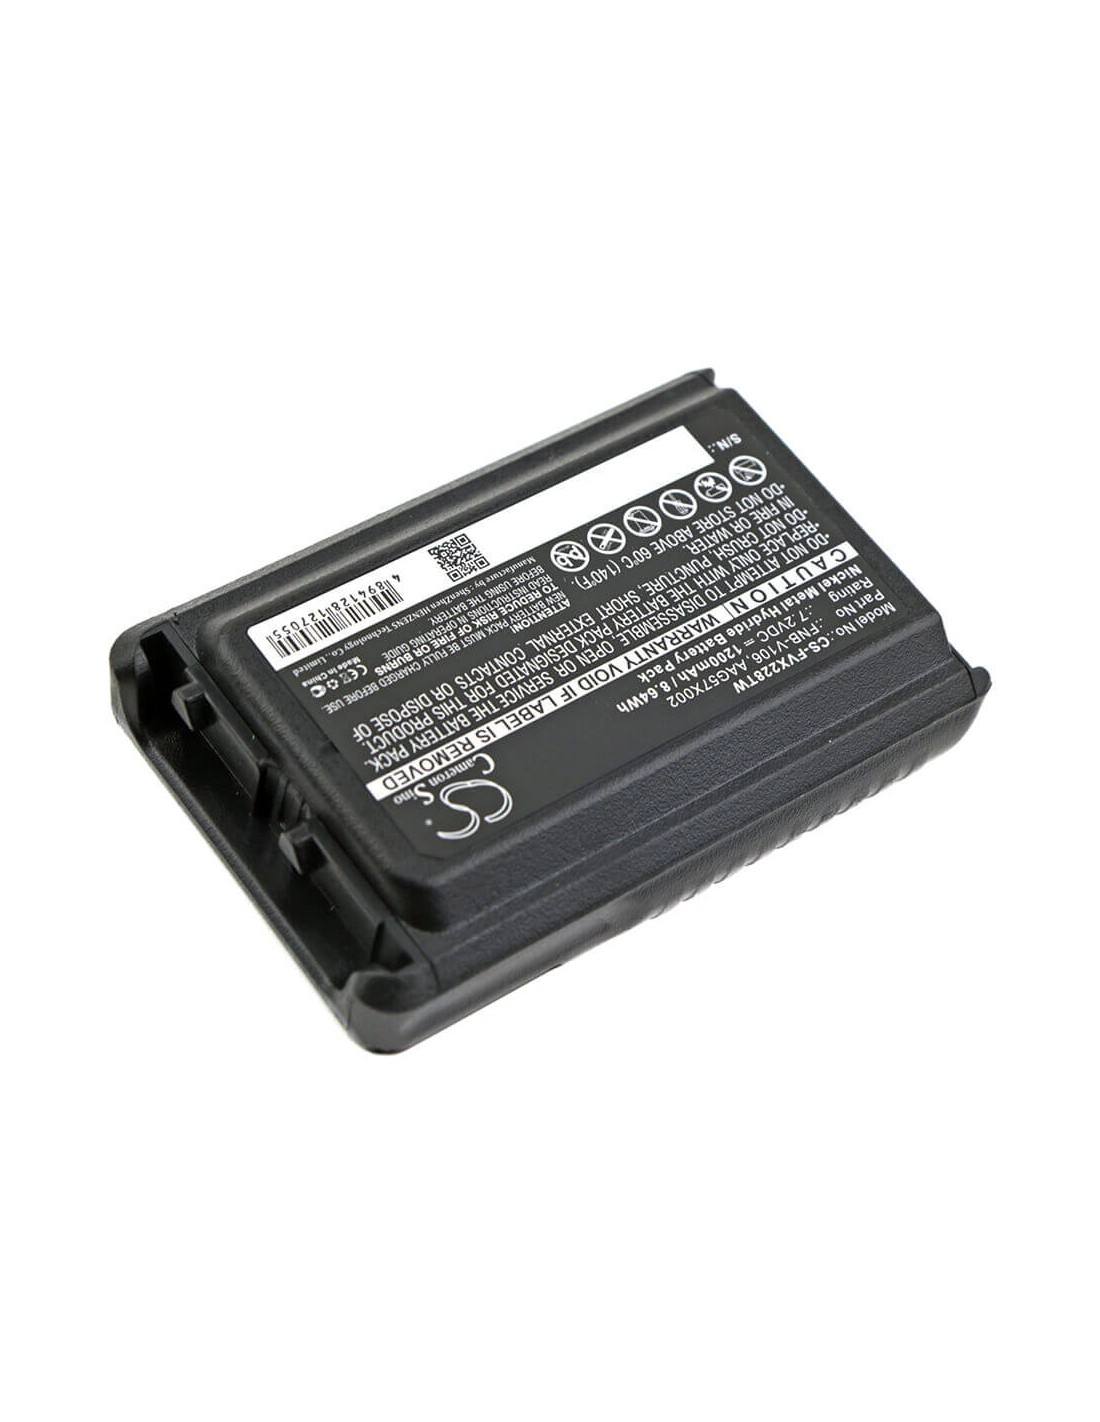 Battery for Vertex, Vx-228, Vx-230 7.2V, 1200mAh - 8.64Wh